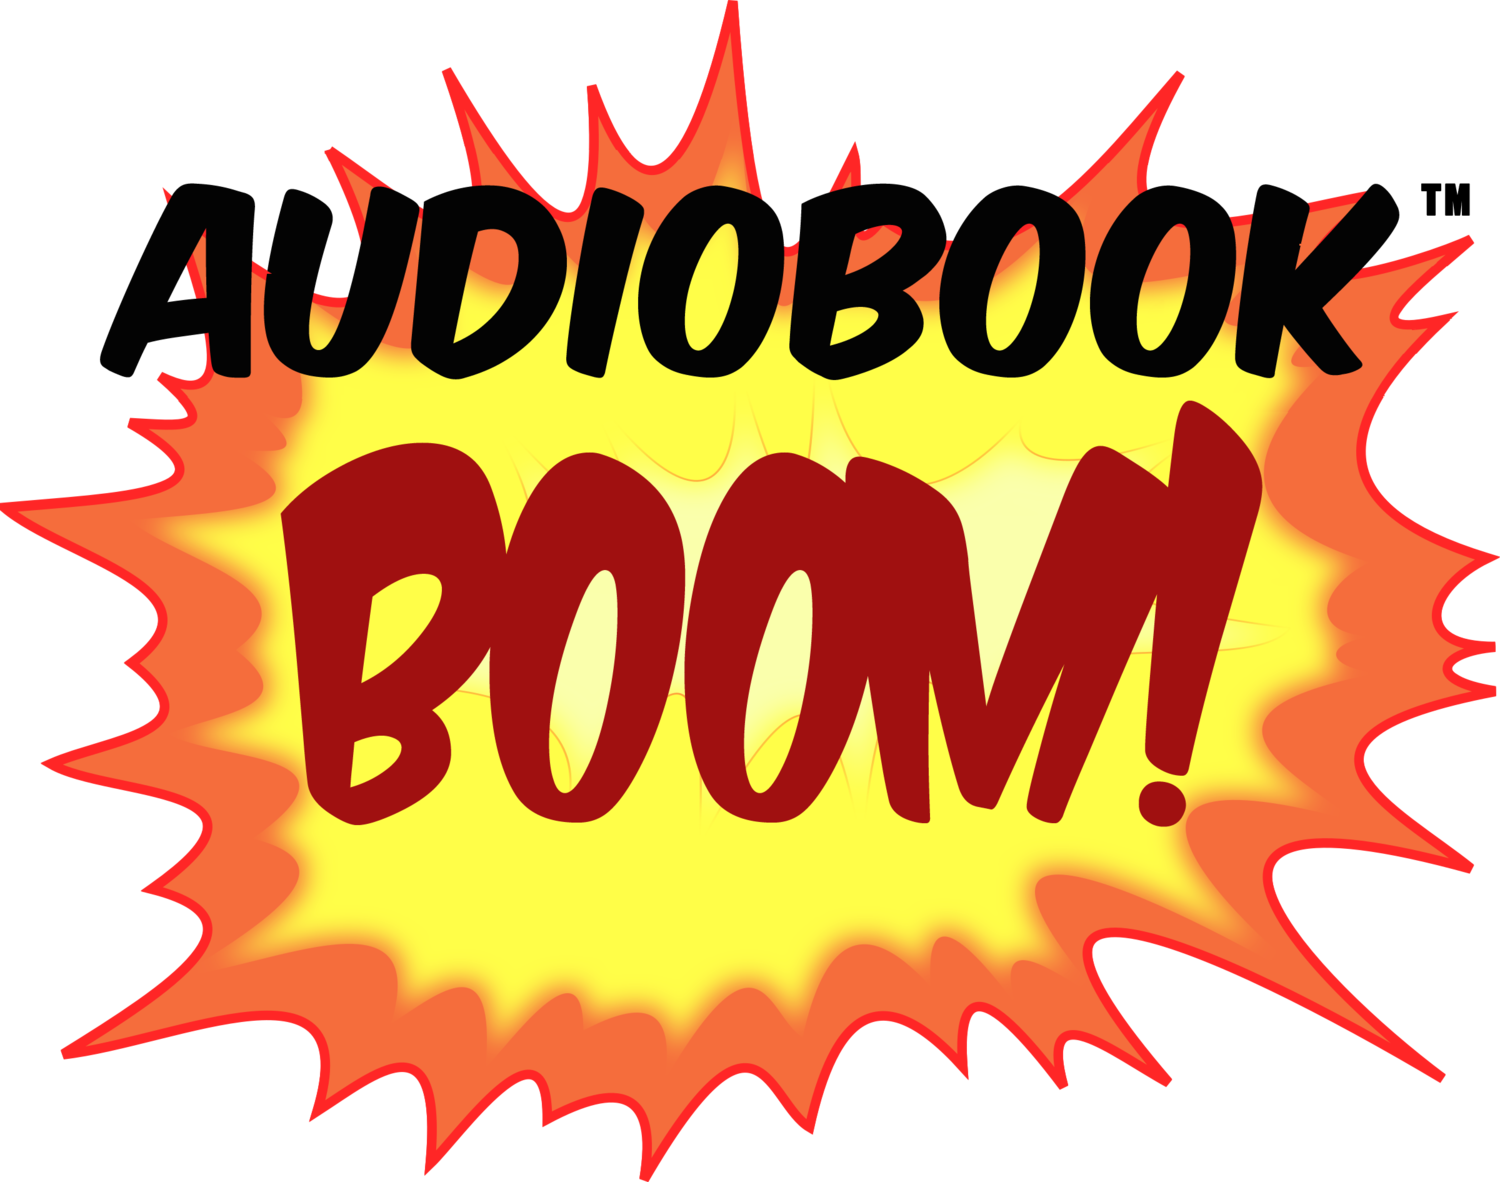 Audiobook Boom! - Free & Sale-Priced Audiobook Deals in your Inbox